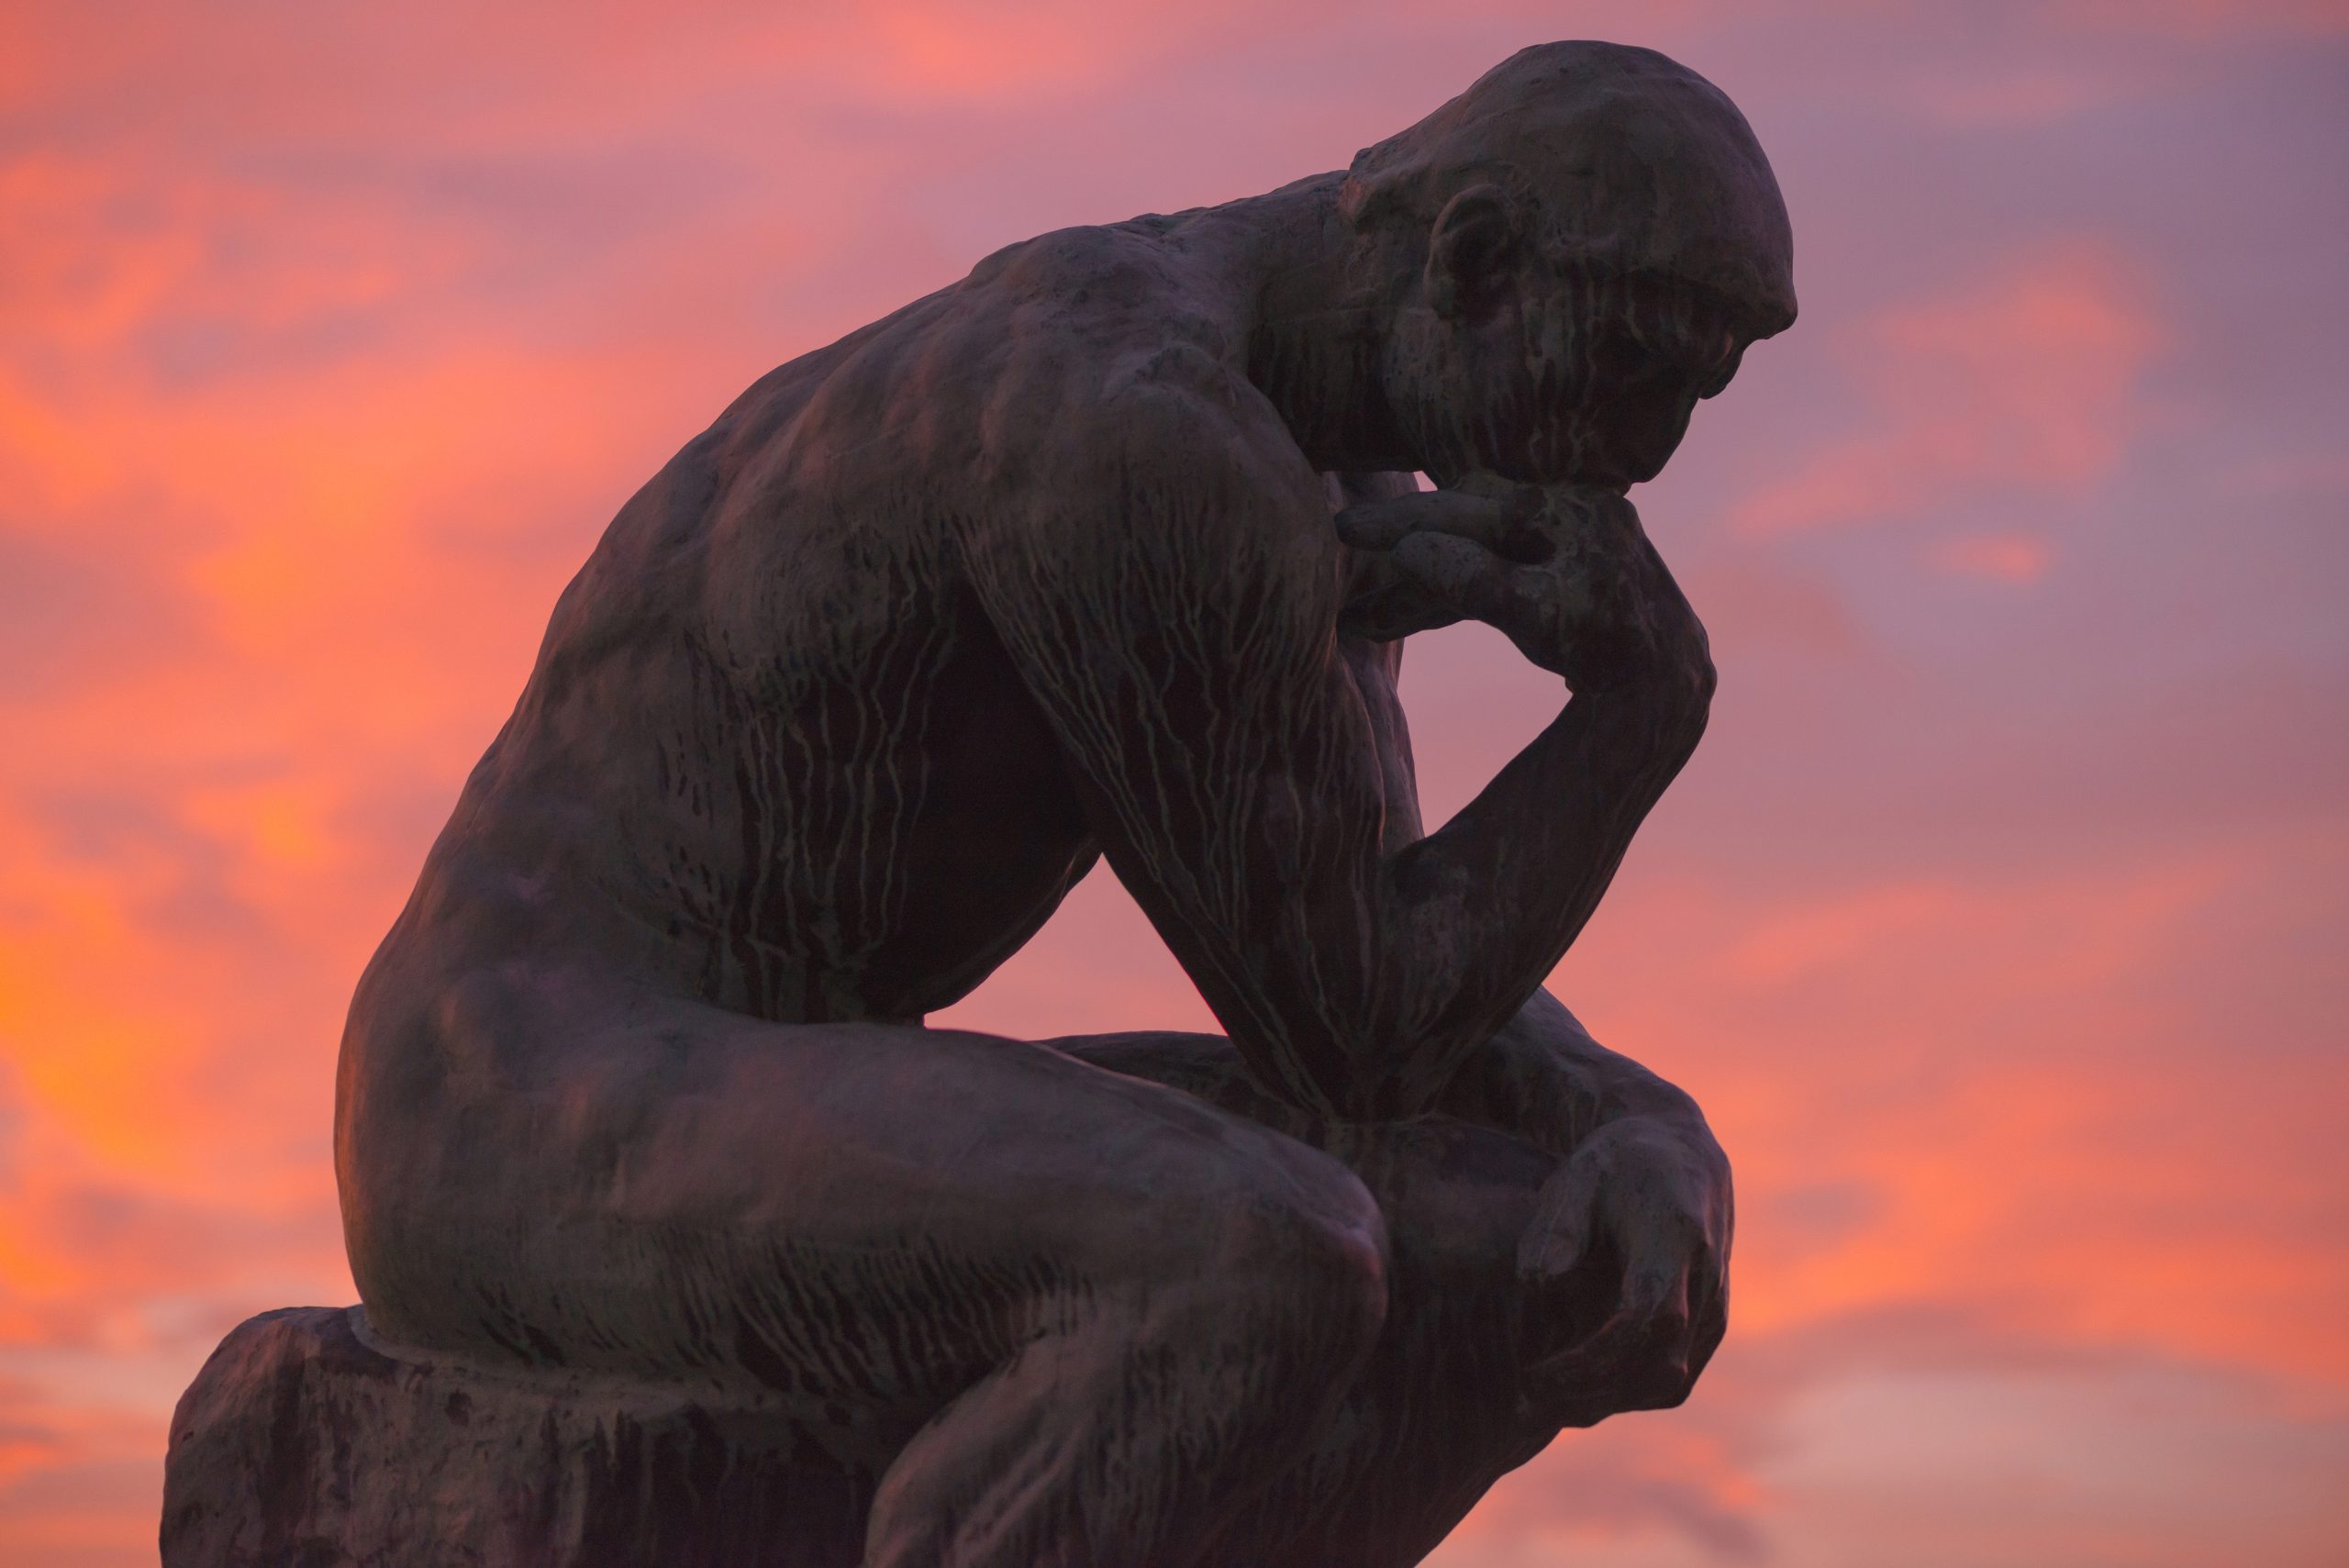 STOCKHOLM, SWEDEN - DEC 30, 2016: Sculpture of the thinker of Rodin at Waldermarsudde in sunset light.